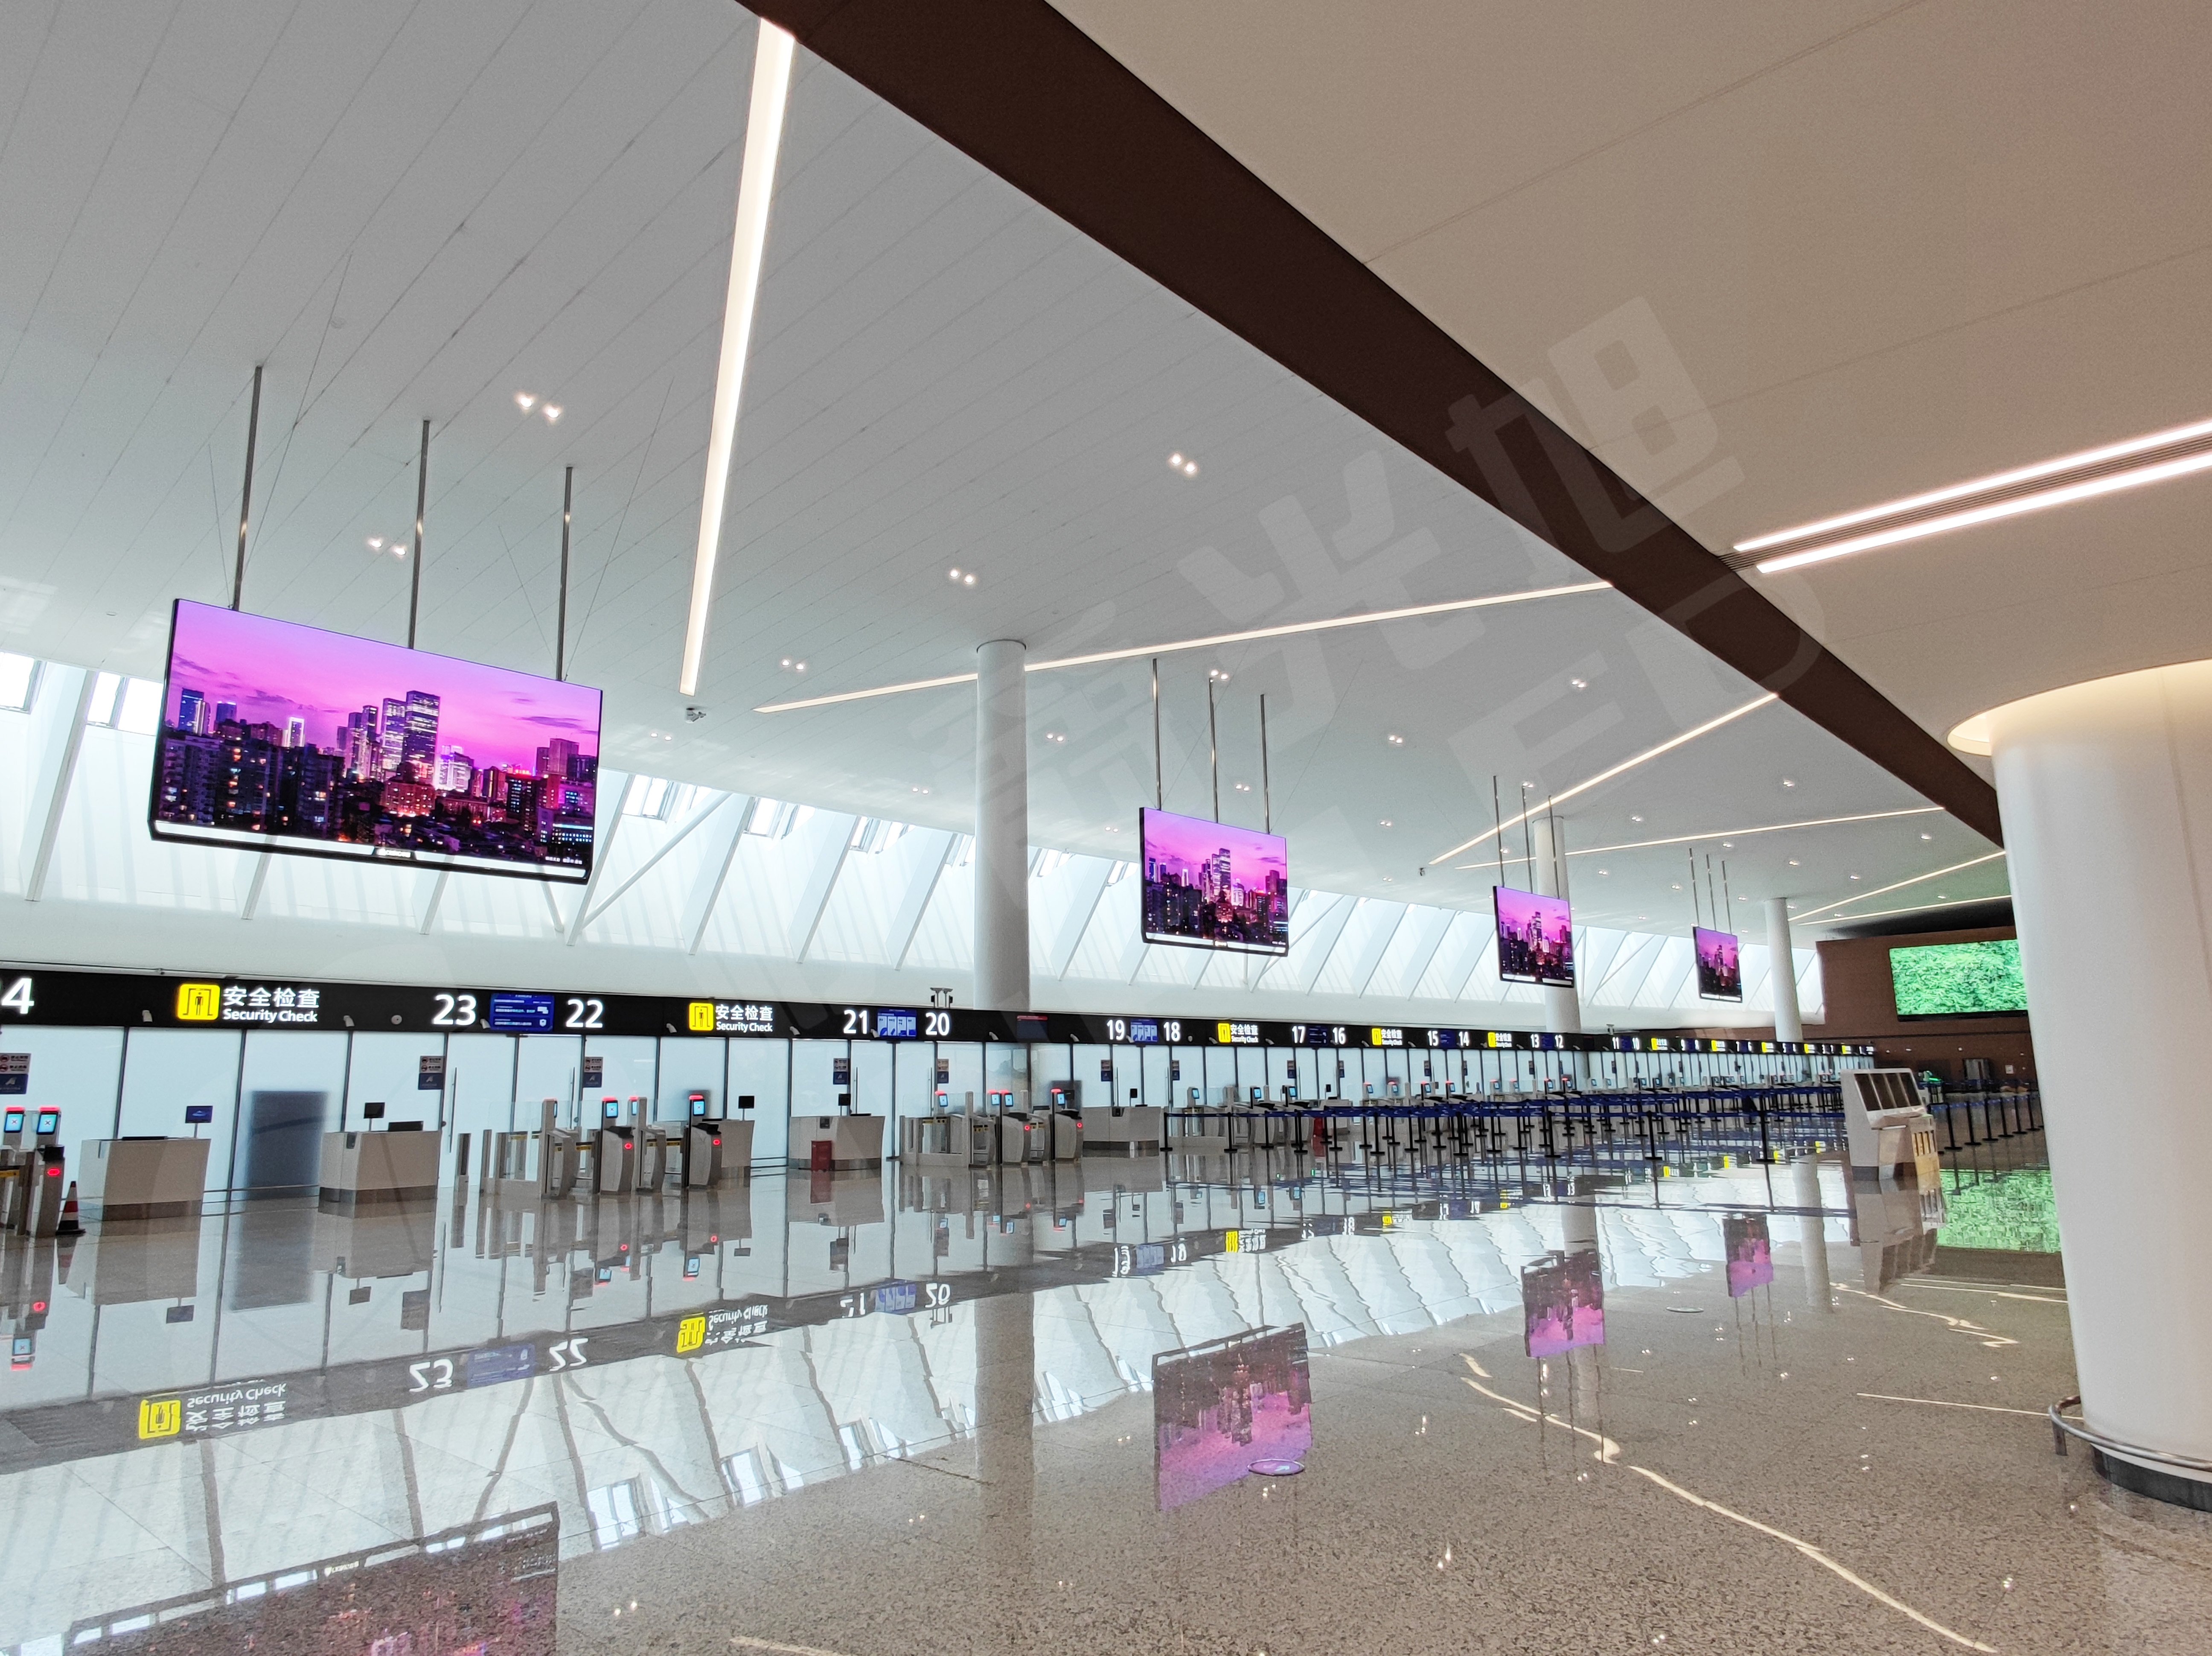 视爵光旭以天府机场切实需求为出发点，采用领秀系列搭建T2航站楼出发大厅超高清LED吊装屏